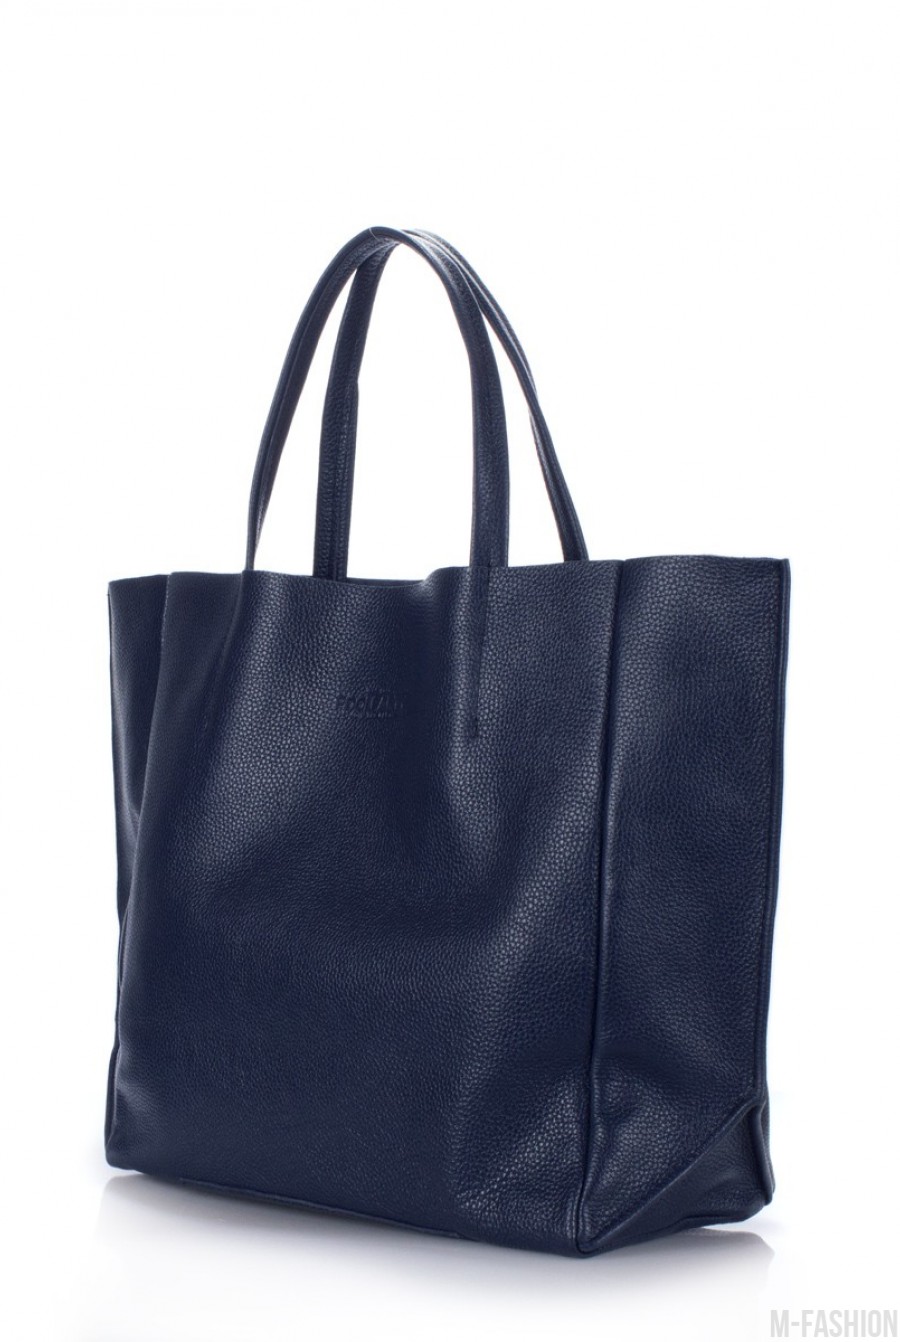 Кожаная синяя сумка Soho классического дизайна- Фото 2